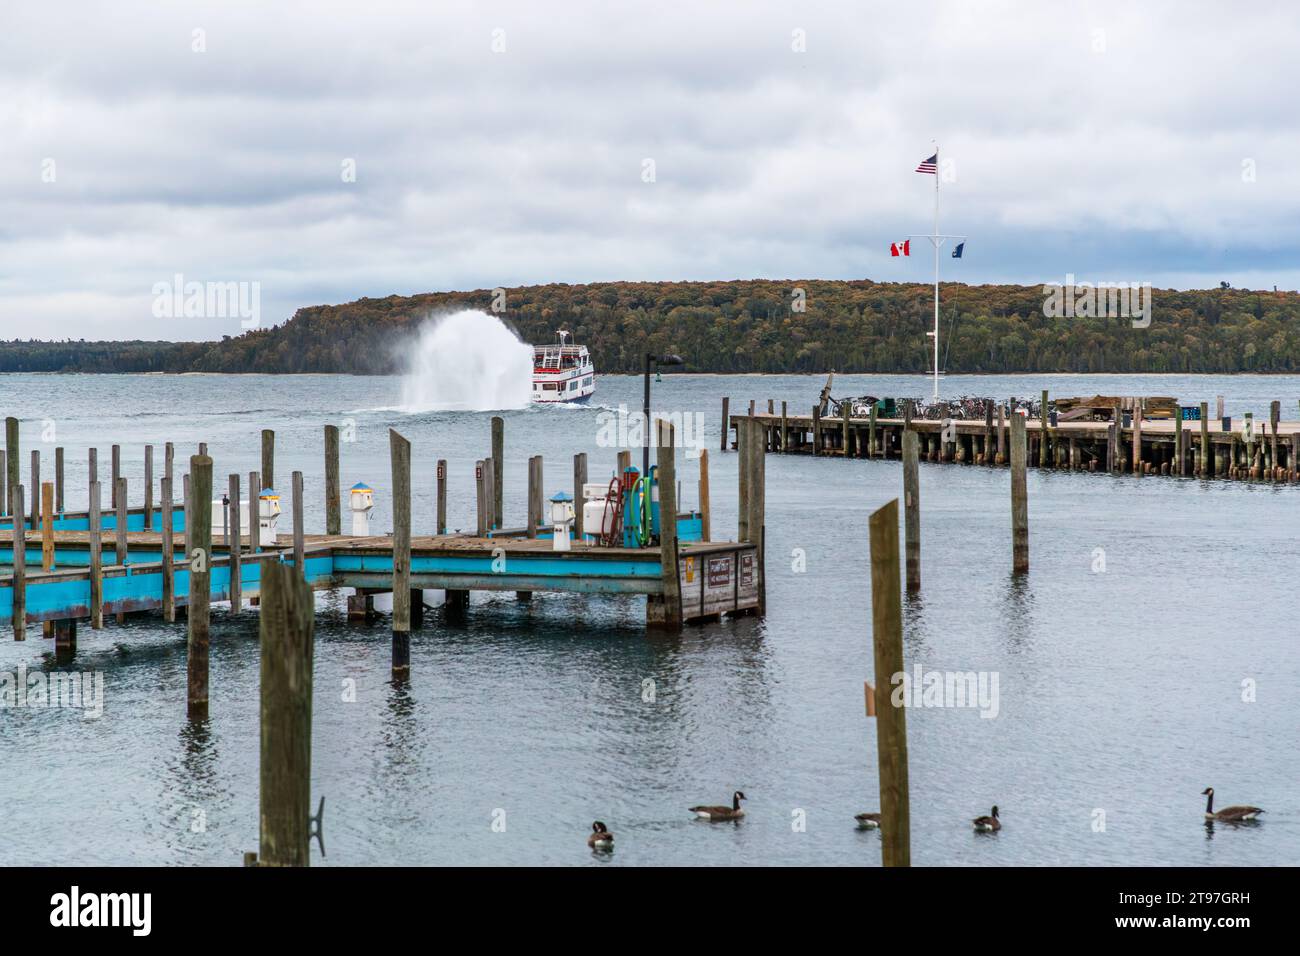 Haldimand Bay Jetties, Mackinac Island und Fähre von Shepler's Ferry. Das Schnellboot dauert 15 Minuten zum Festland. Schnelle Fähre auf dem Weg zwischen dem Festland und Mackinac Island, Michigan, USA Stockfoto